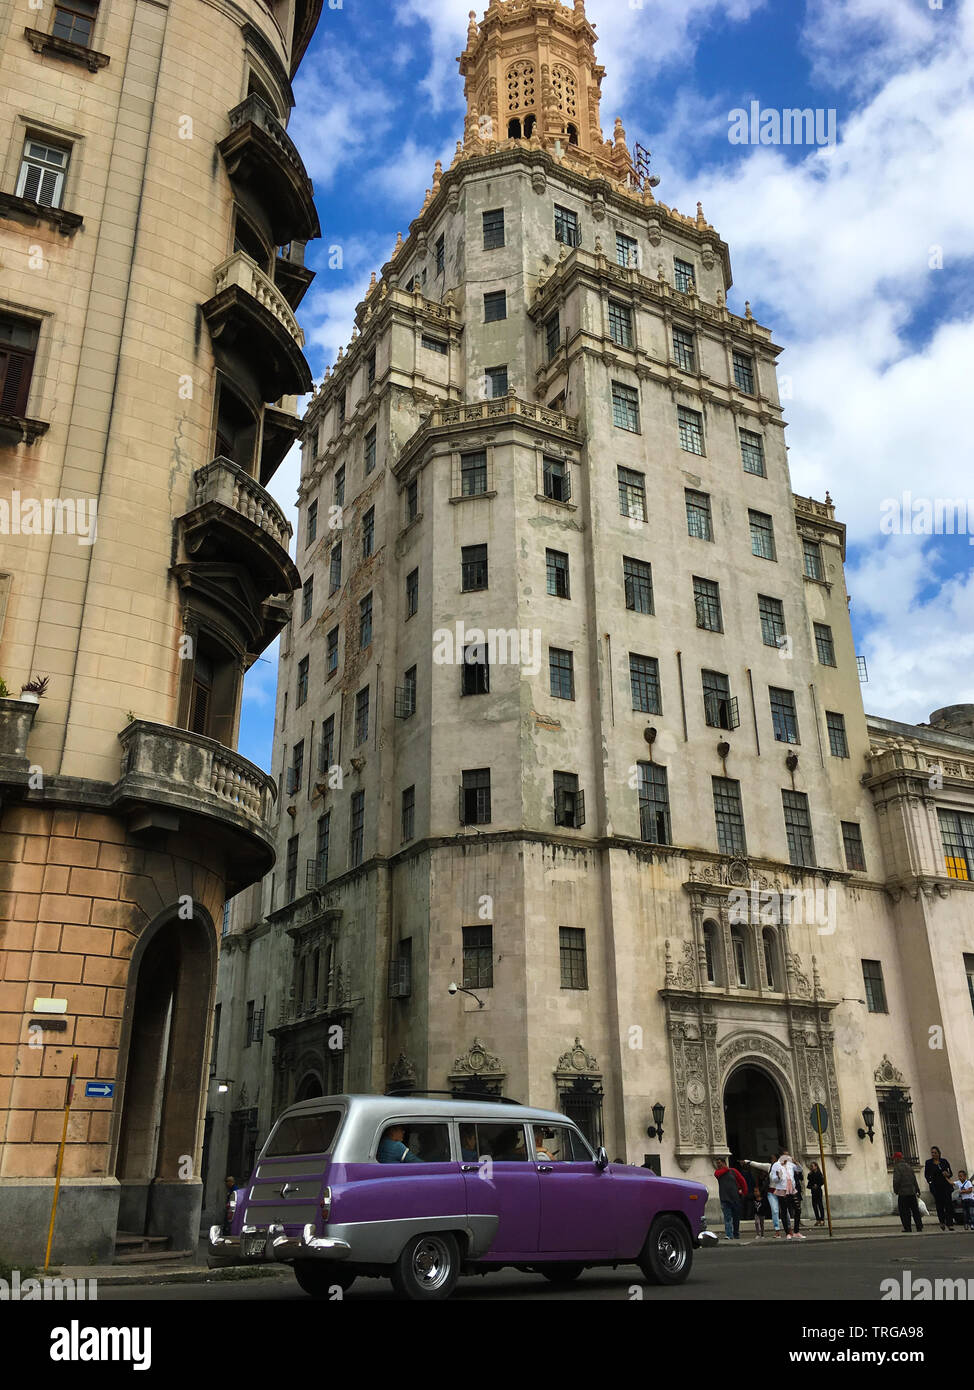 La Havane, Cuba - 31 janvier 2018 : classique, jeune Américain de couleur pourpre wagon voiture en face d'un bâtiment impressionnant dans les rues de La Havane centre-ville Banque D'Images